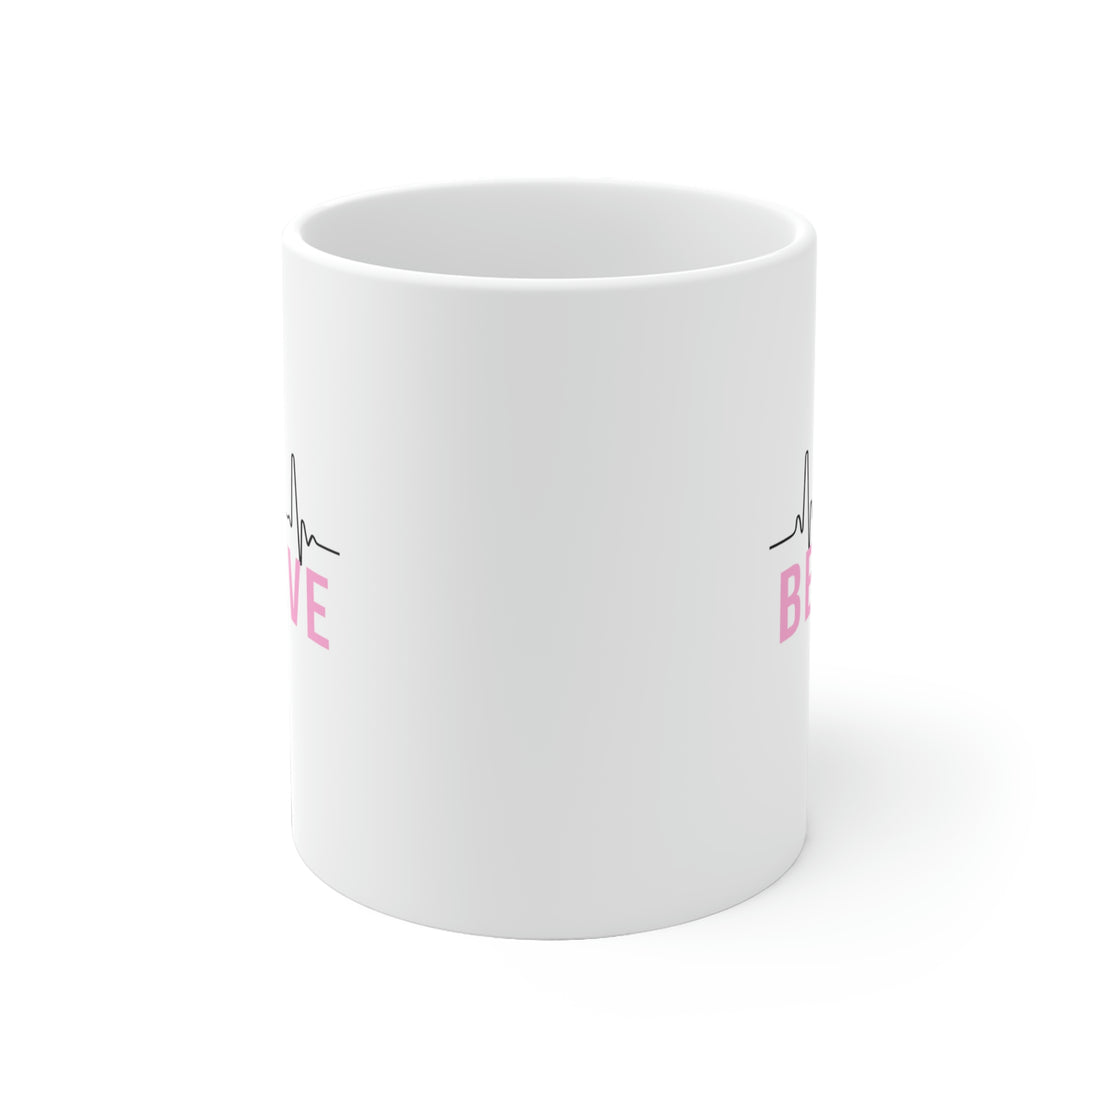 Believe - White Ceramic Mug 2 sizes Available